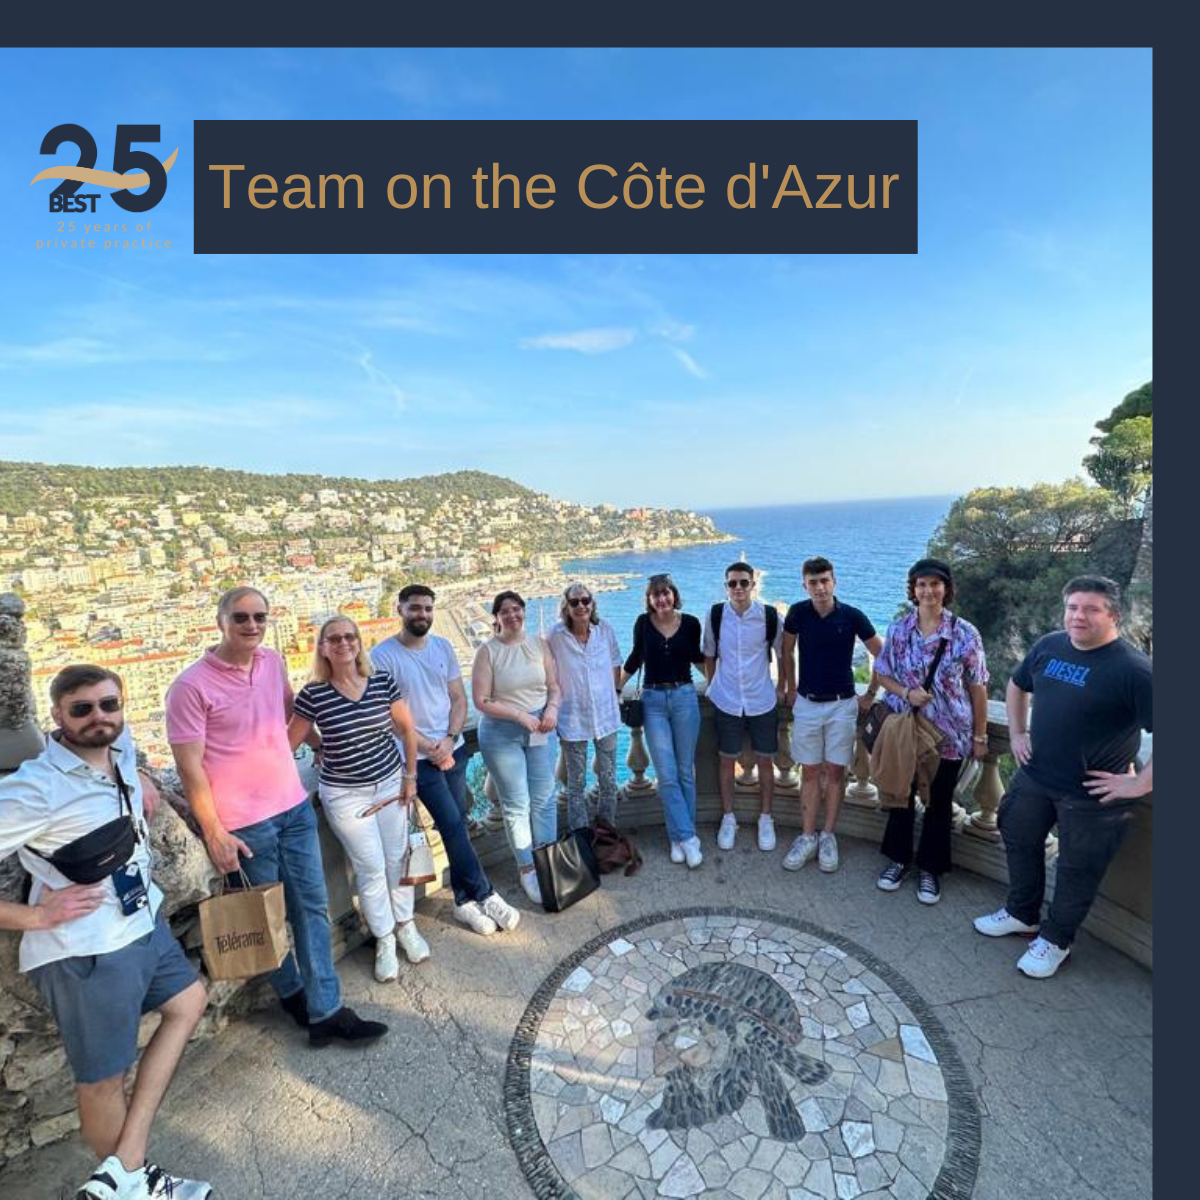 Dr. Michael Best feiert mit Team an der Côte d’Azur